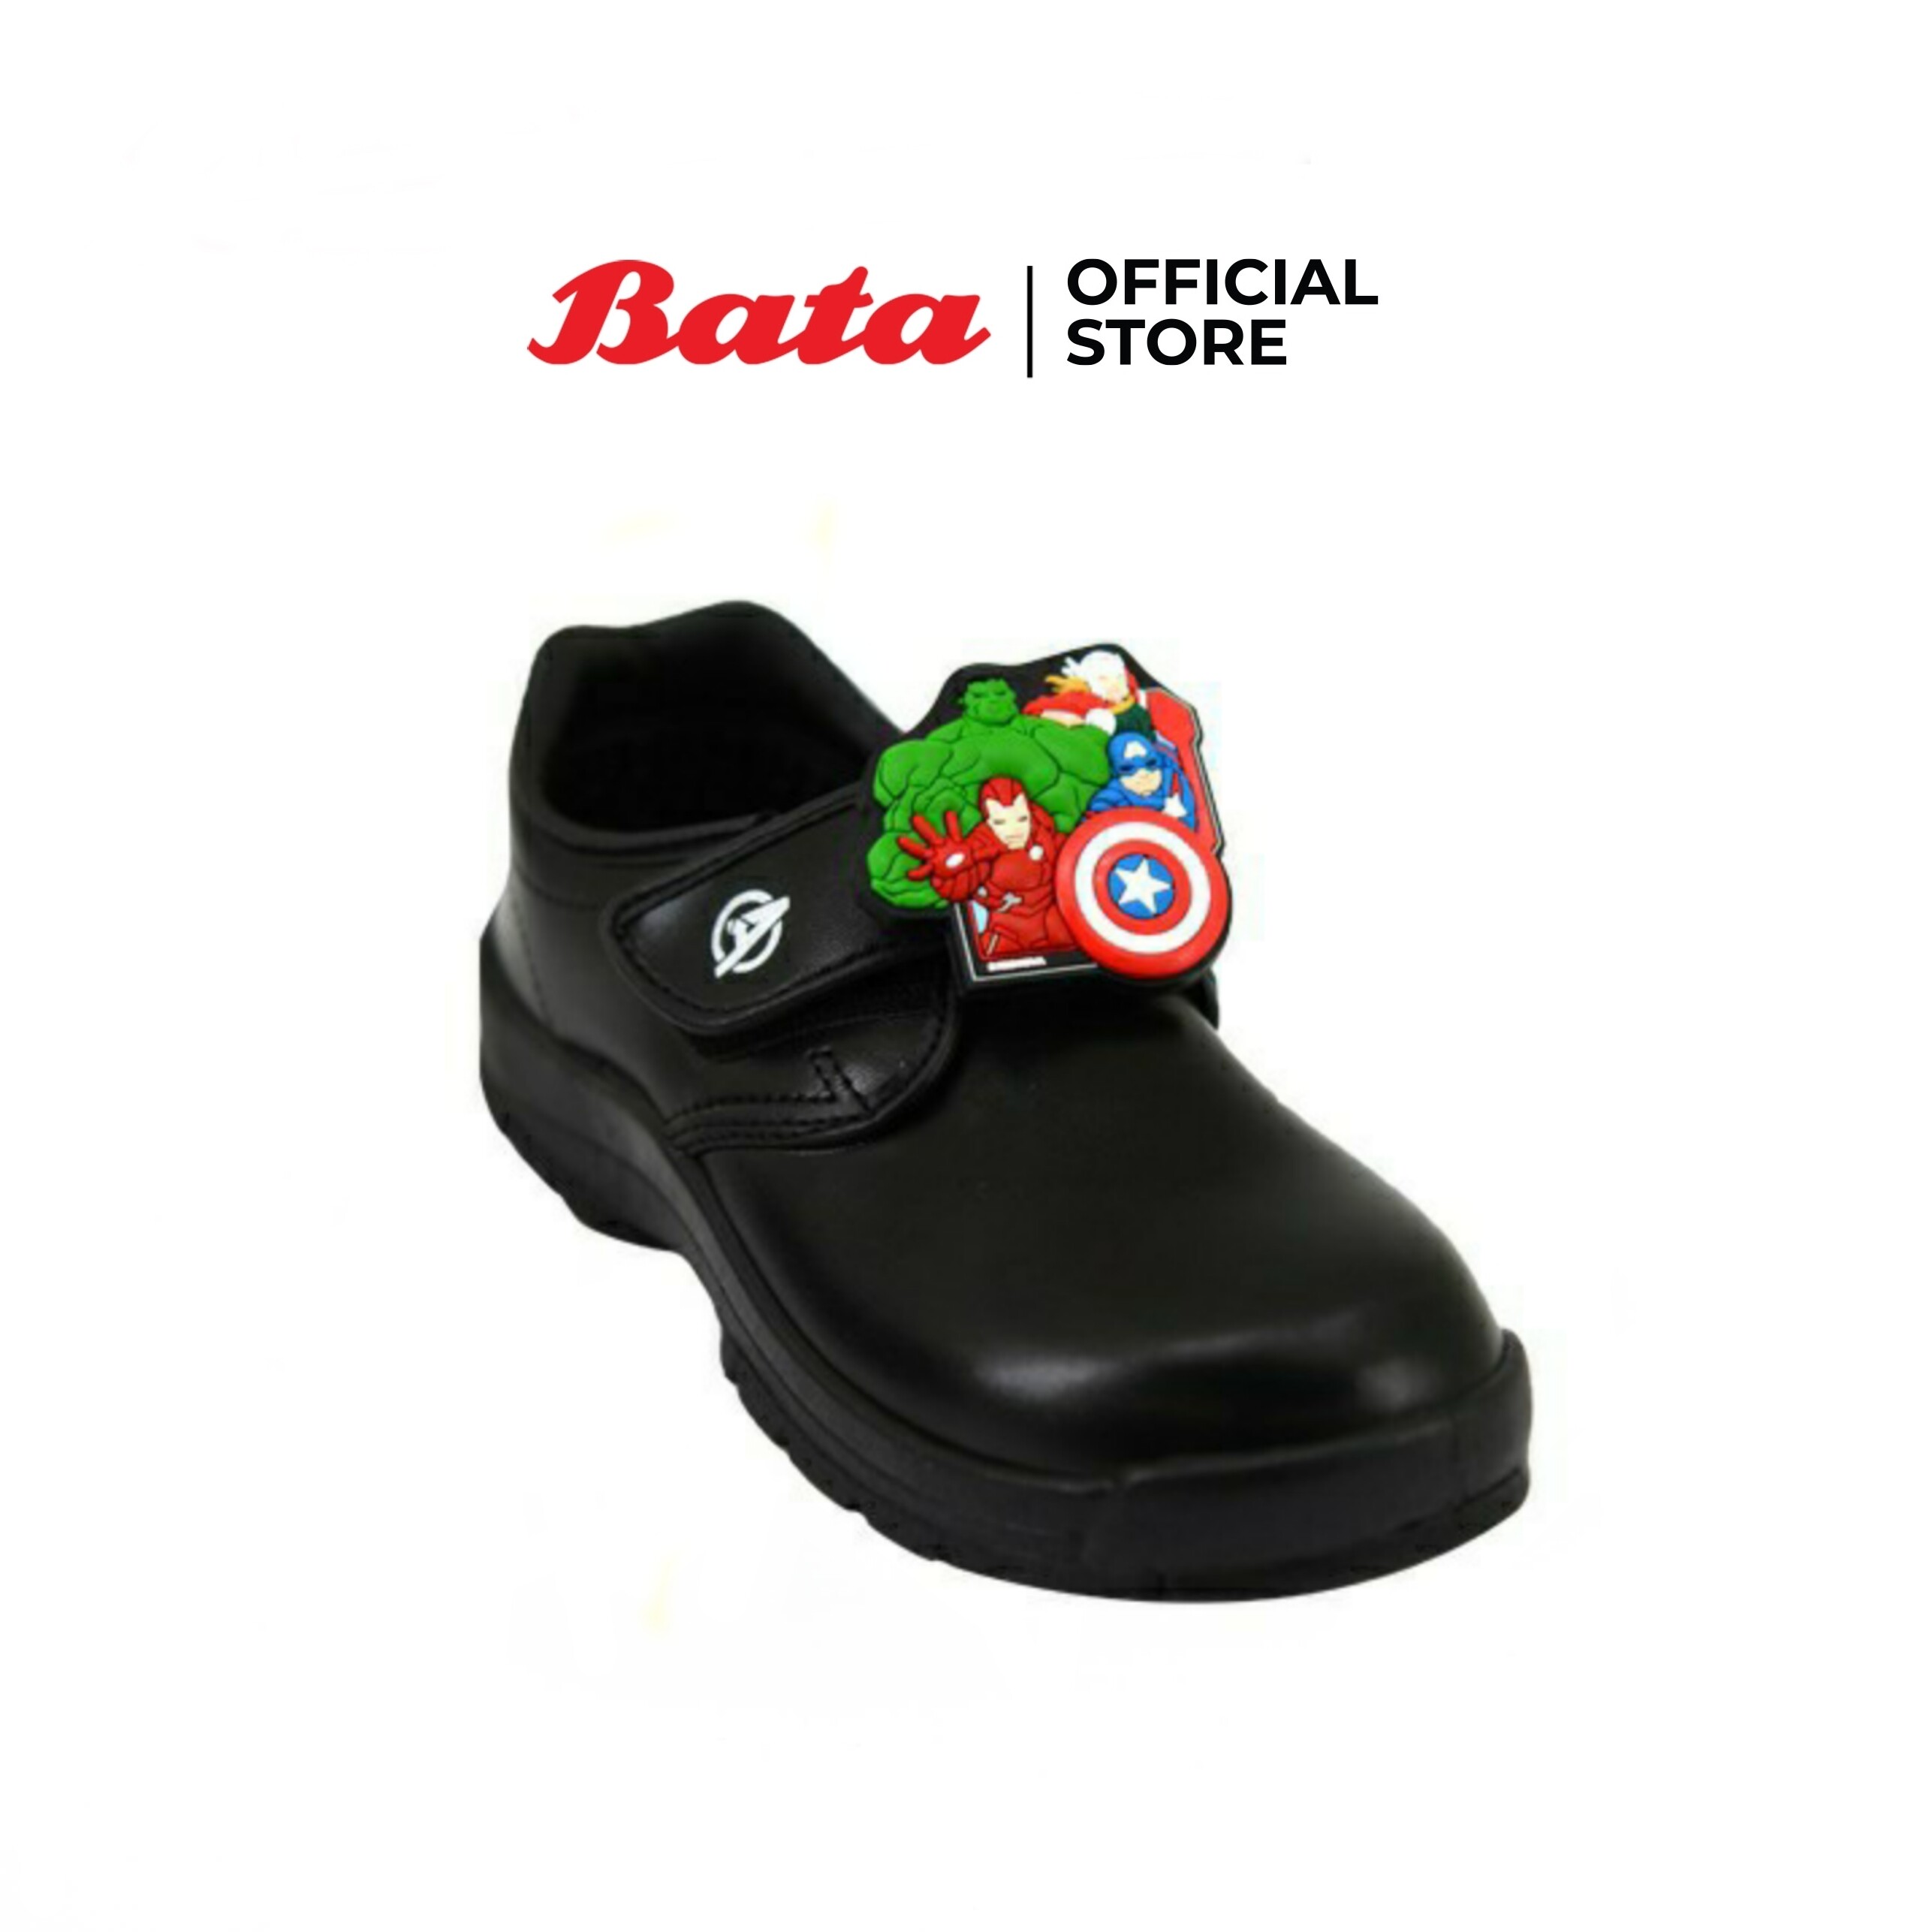 Bata บาจา รองเท้านักเรียนเด็กชาย AntiBac ลดกลิ่นอับ ลาย MARVEL แบบแปะปรับขนาดได้ School Shoes สีดำ รหัส 3416779 สี ดำ ขนาด EU 35 สี ดำขนาด EU 35